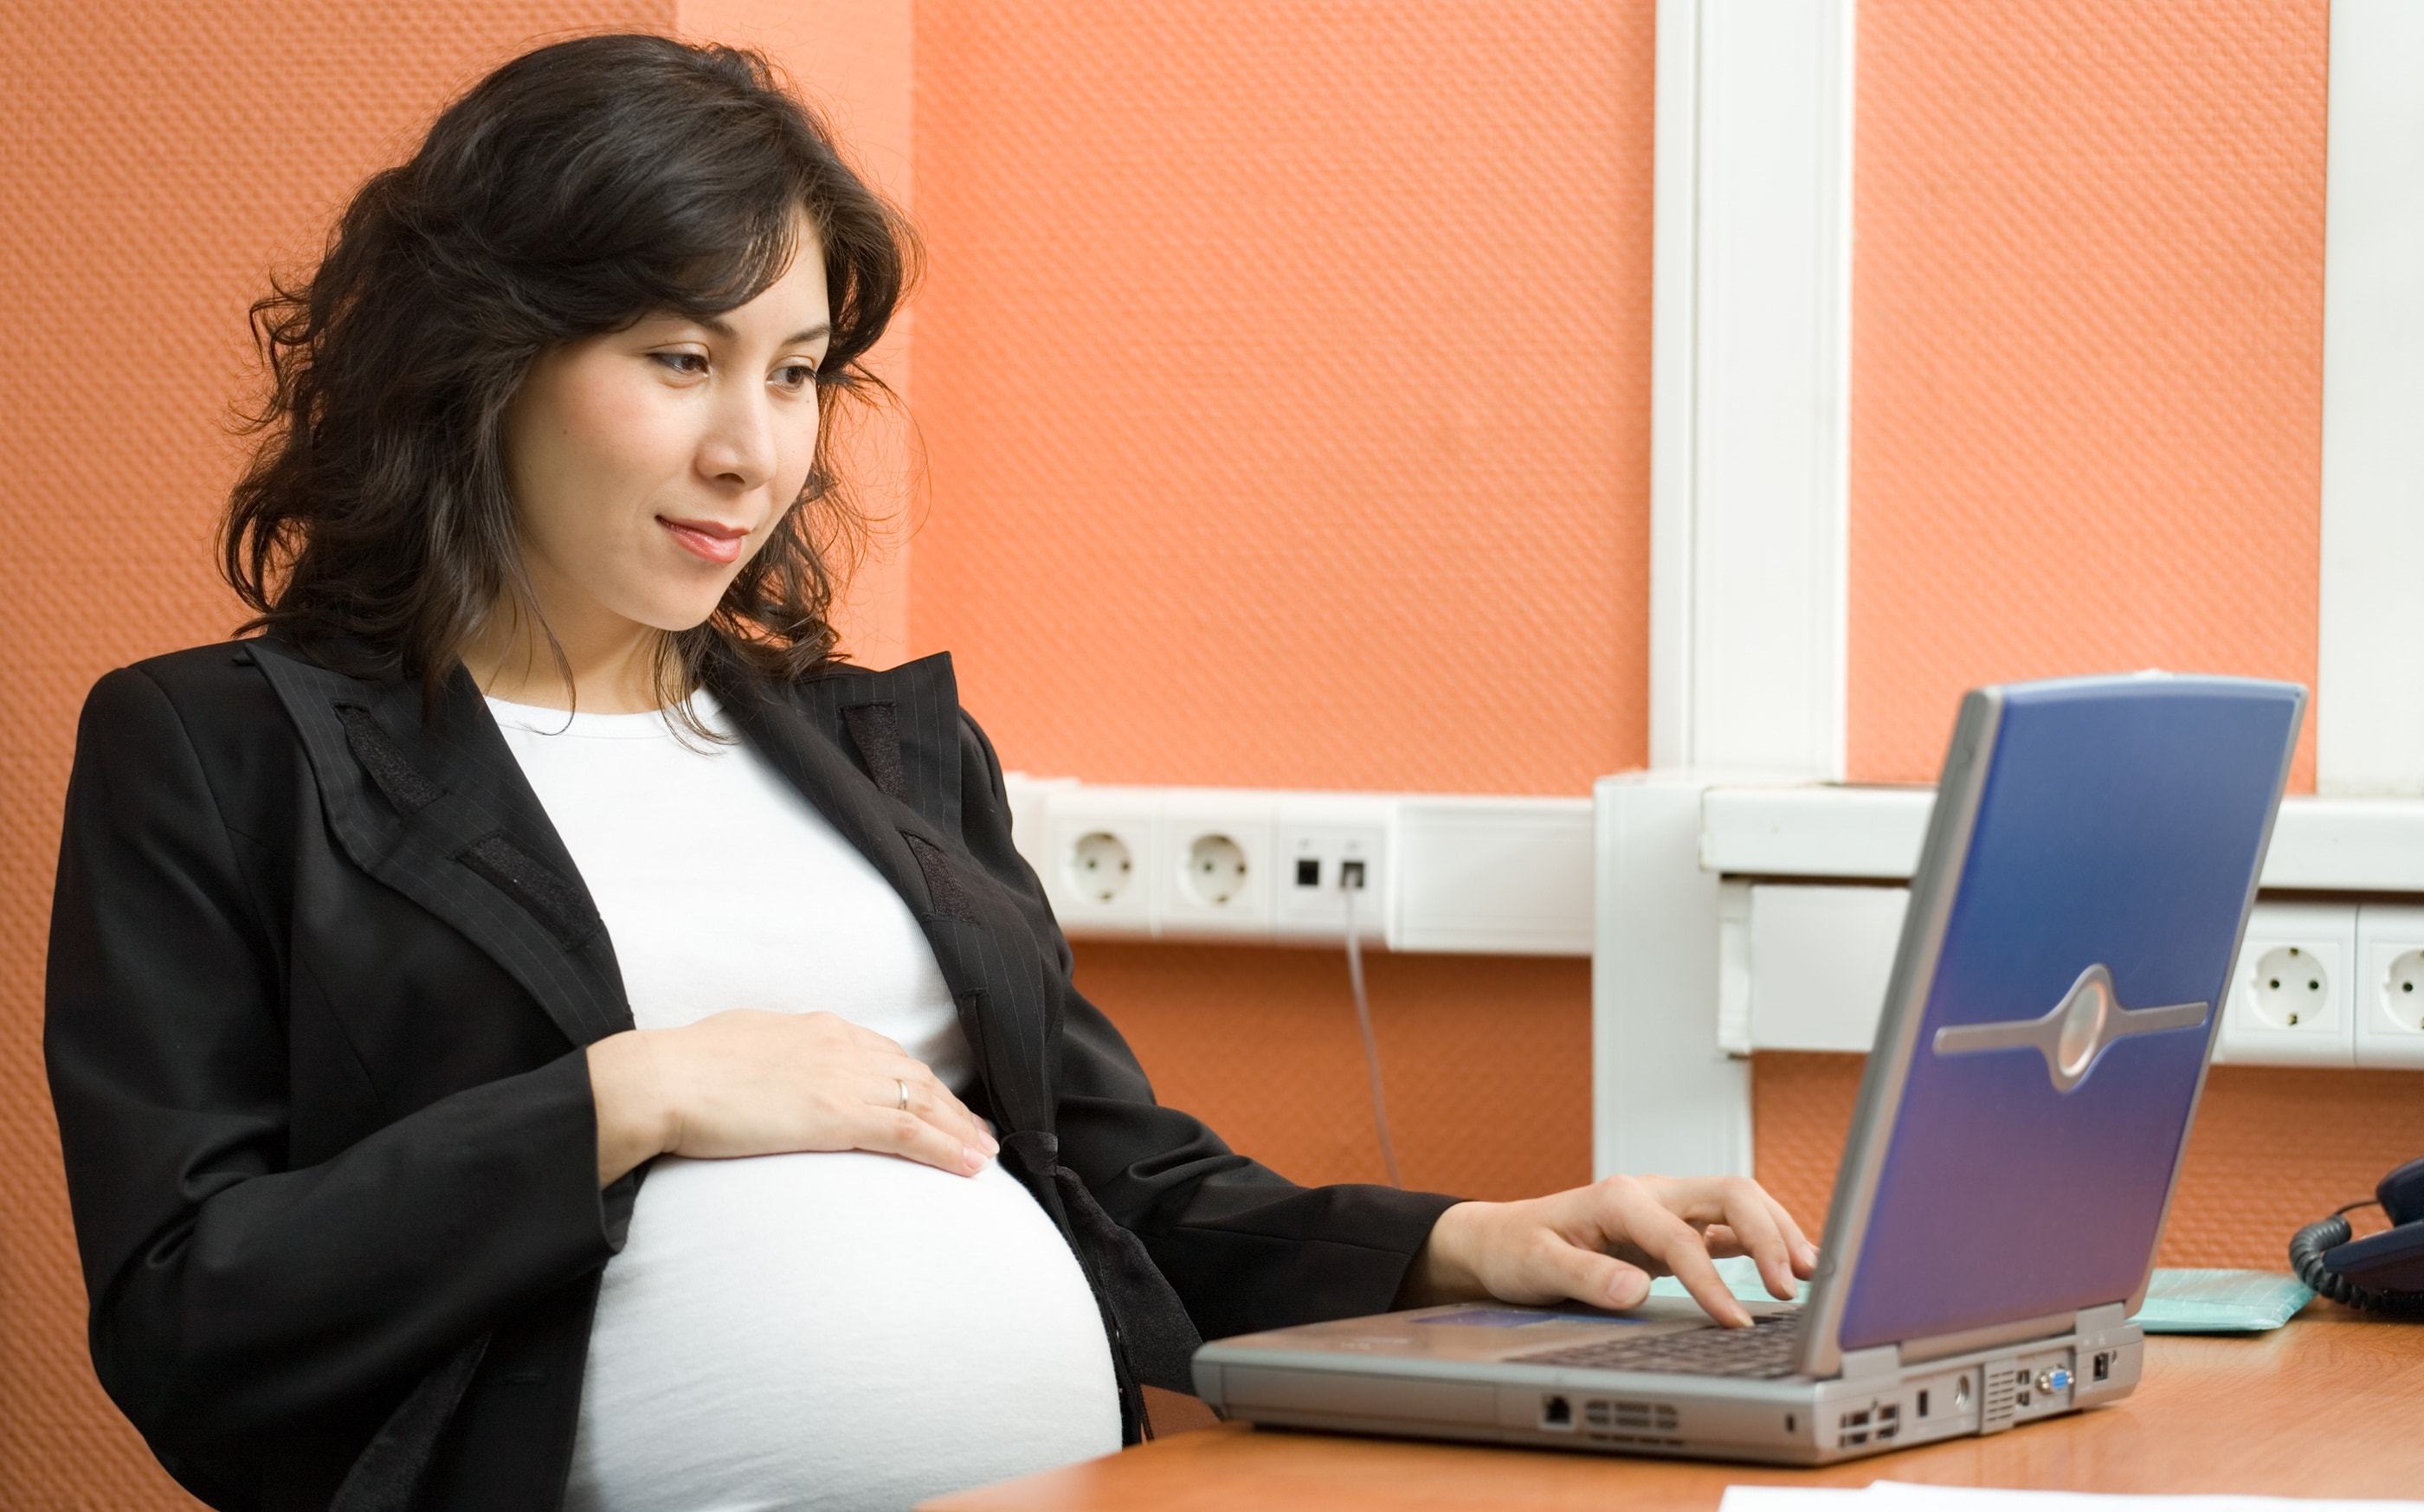 Quyền lợi của phụ nữ mang thai và nuôi con nhỏ khi đi làm ai cũng cần biết 2